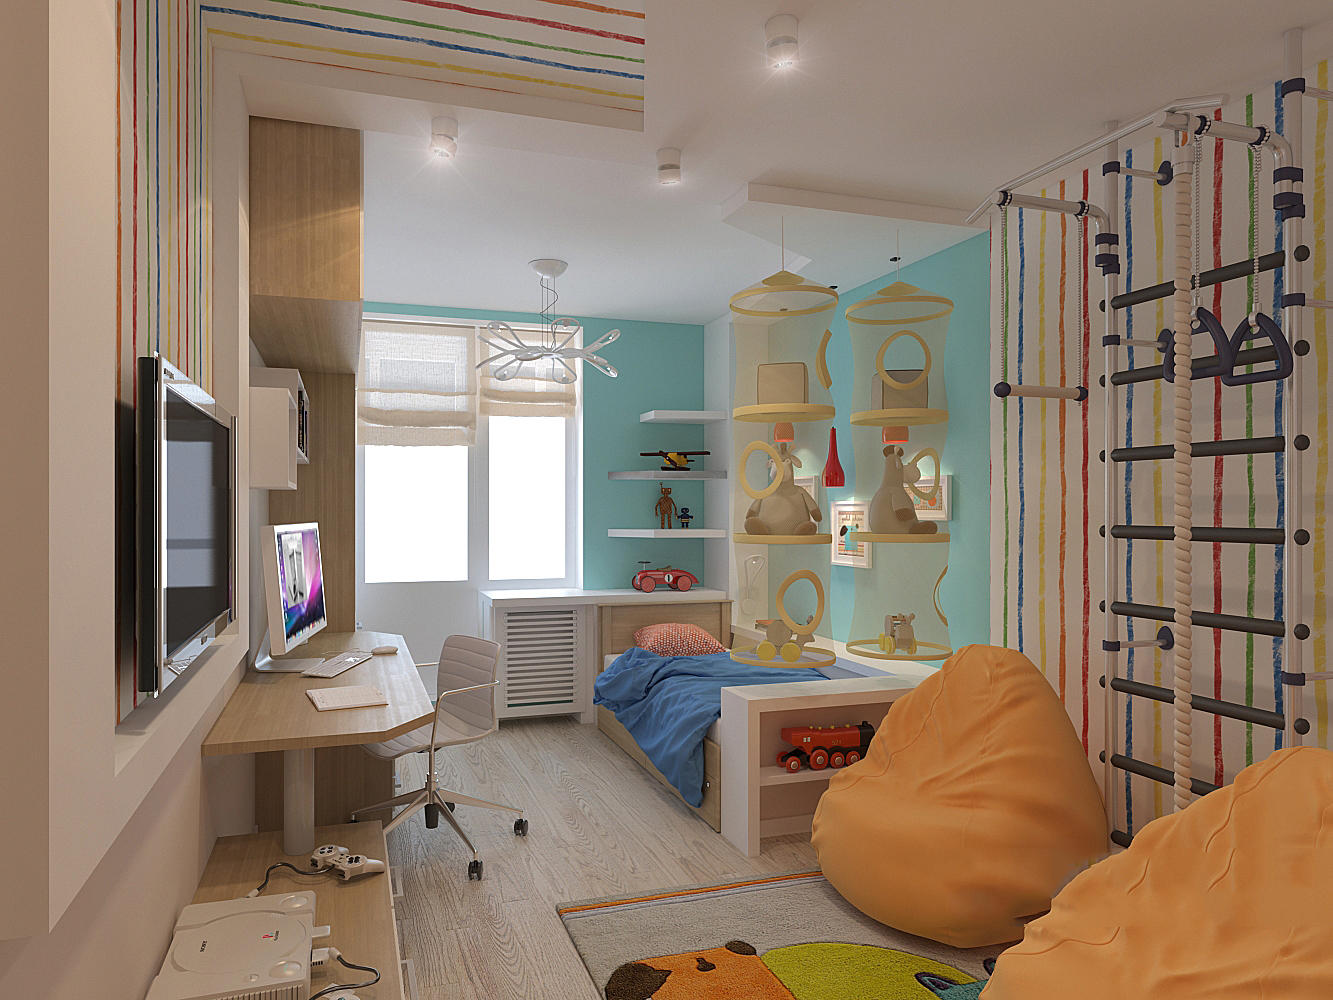 Продумывая интерьер детской комнаты на 12 кв. метров, нужно брать в расчет все нюансы, чтобы дети чувствовали себя там наилучшим образом